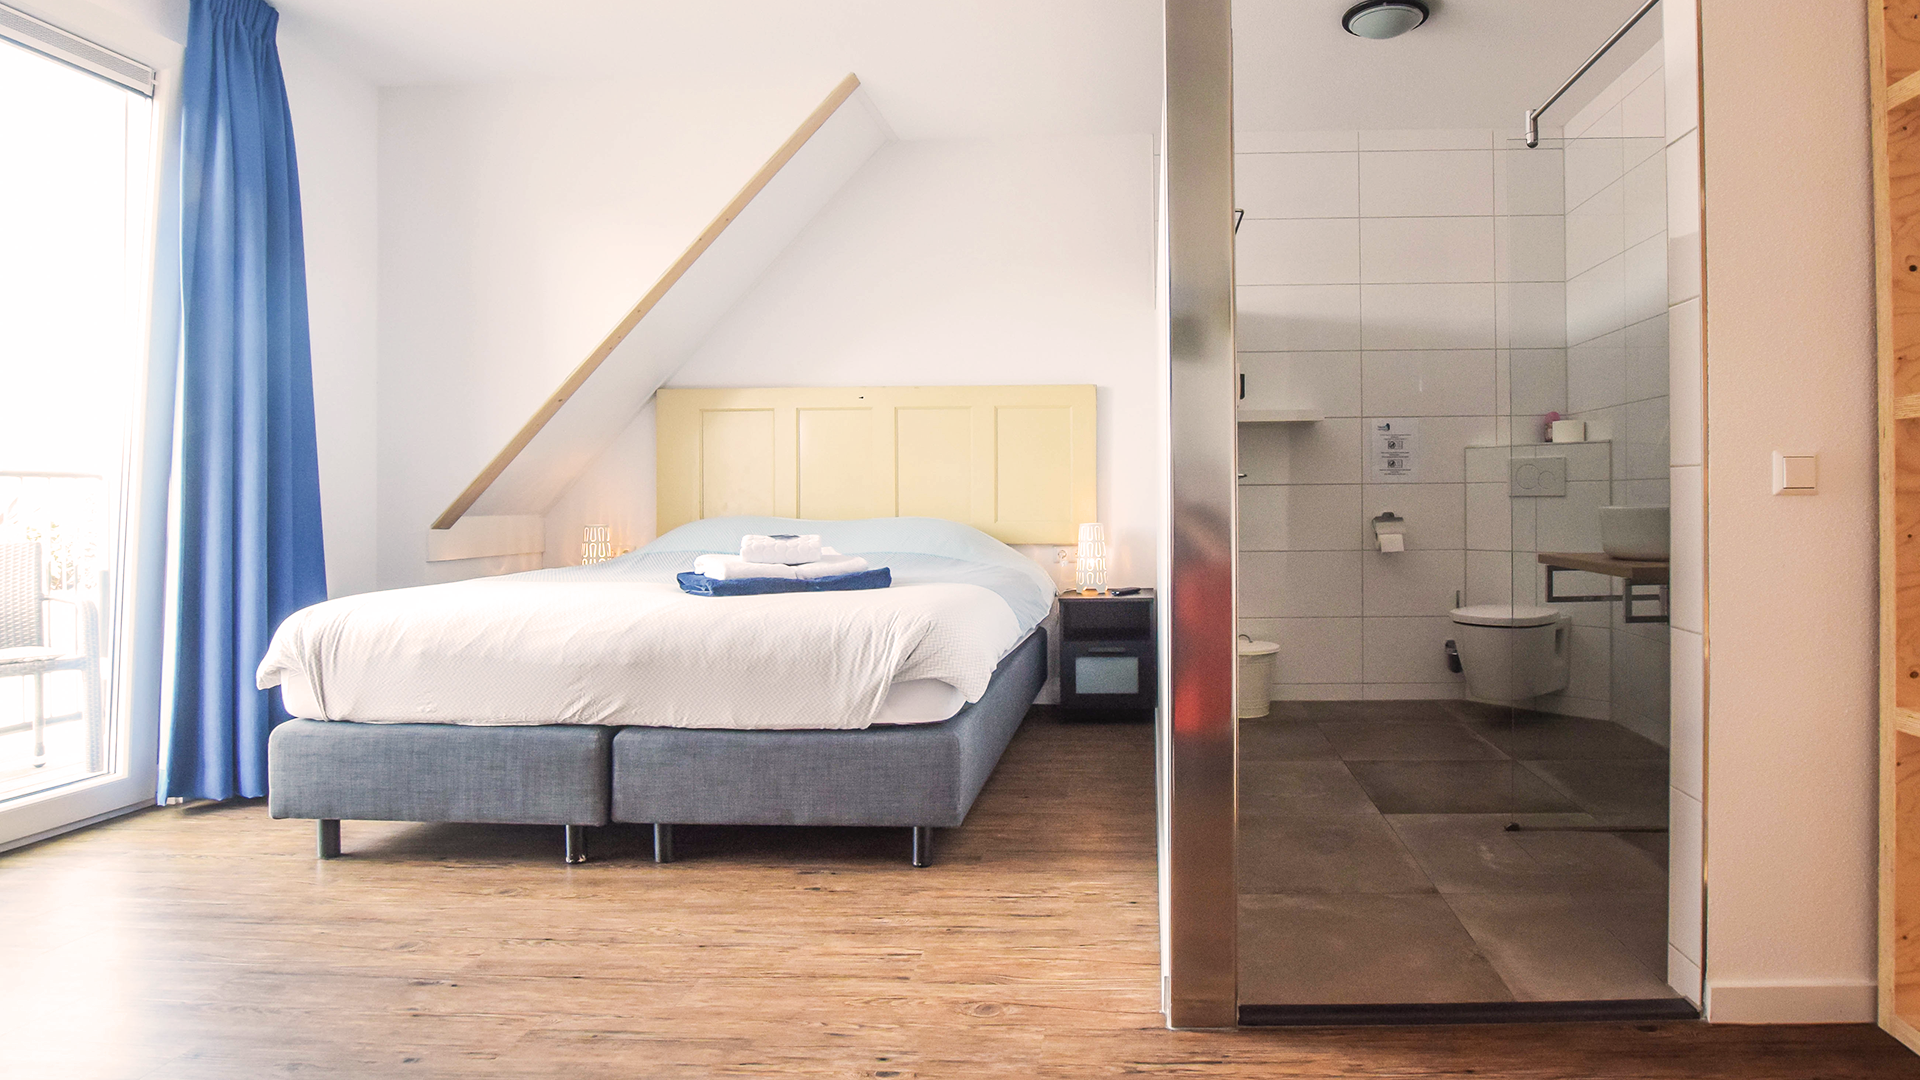 Splitfoto van badkamer en kamer